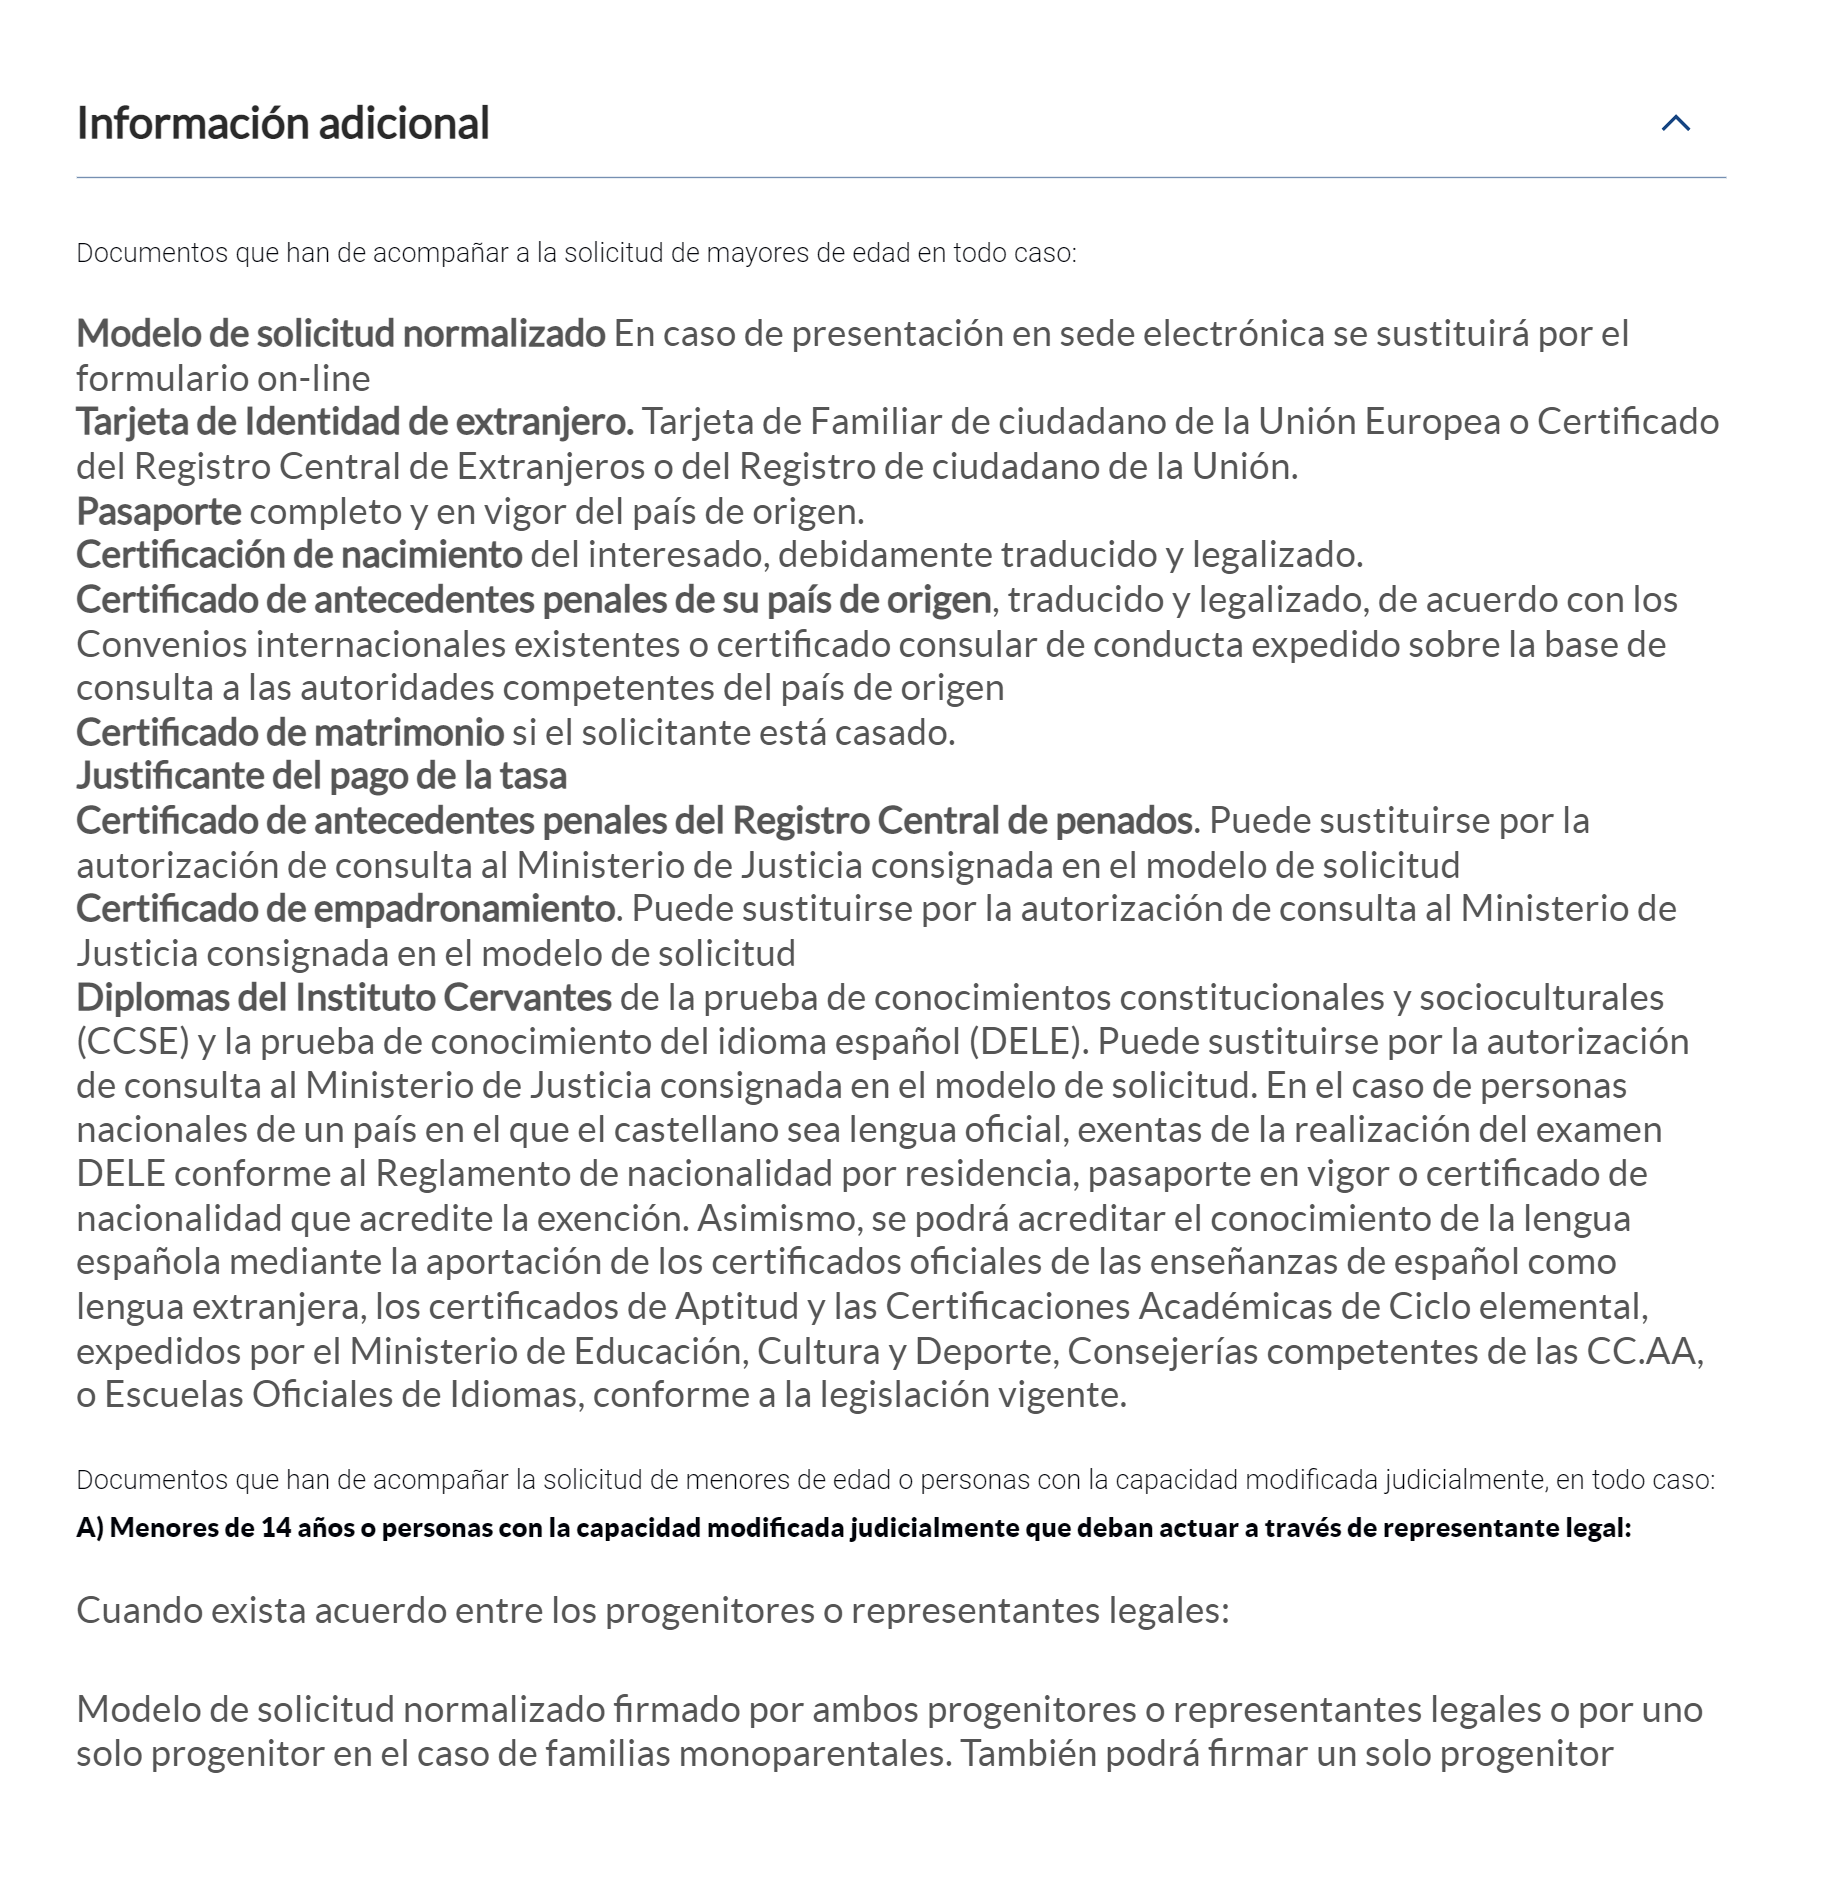 Скриншот сайта Минюста со списком необходимых документов для гражданства